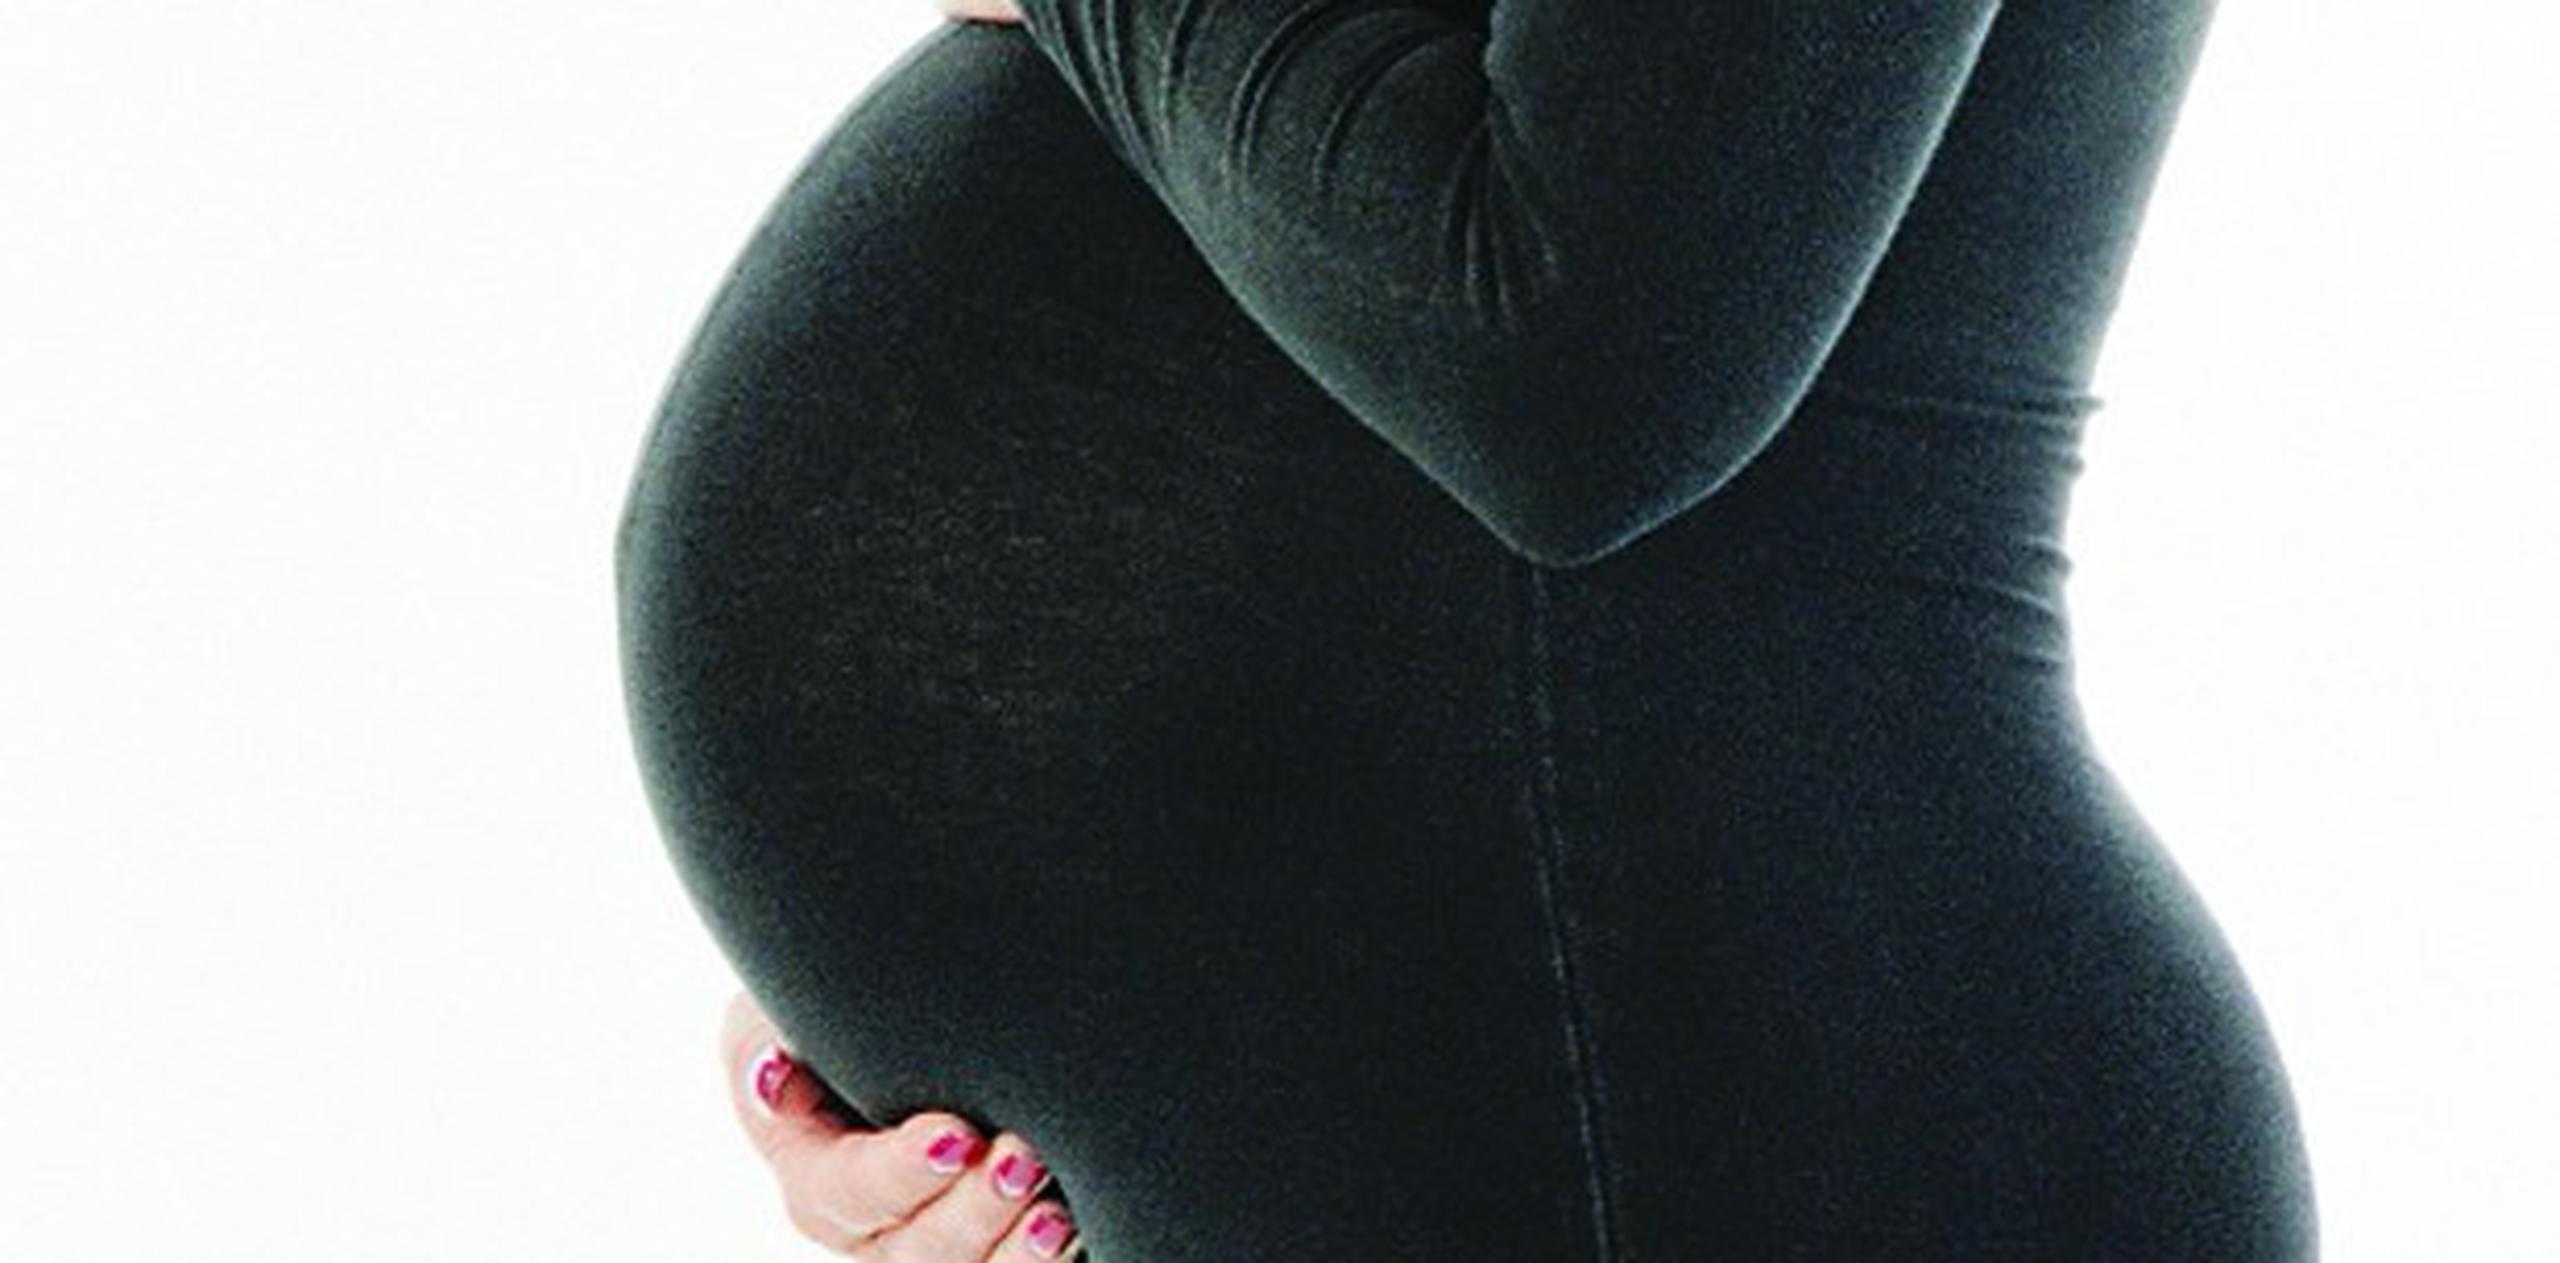 Sólo 4% de las mujeres menores de 35 años usaron embriones en 2007, pero la cifra se elevó a 15% en 2012. (Archivo)